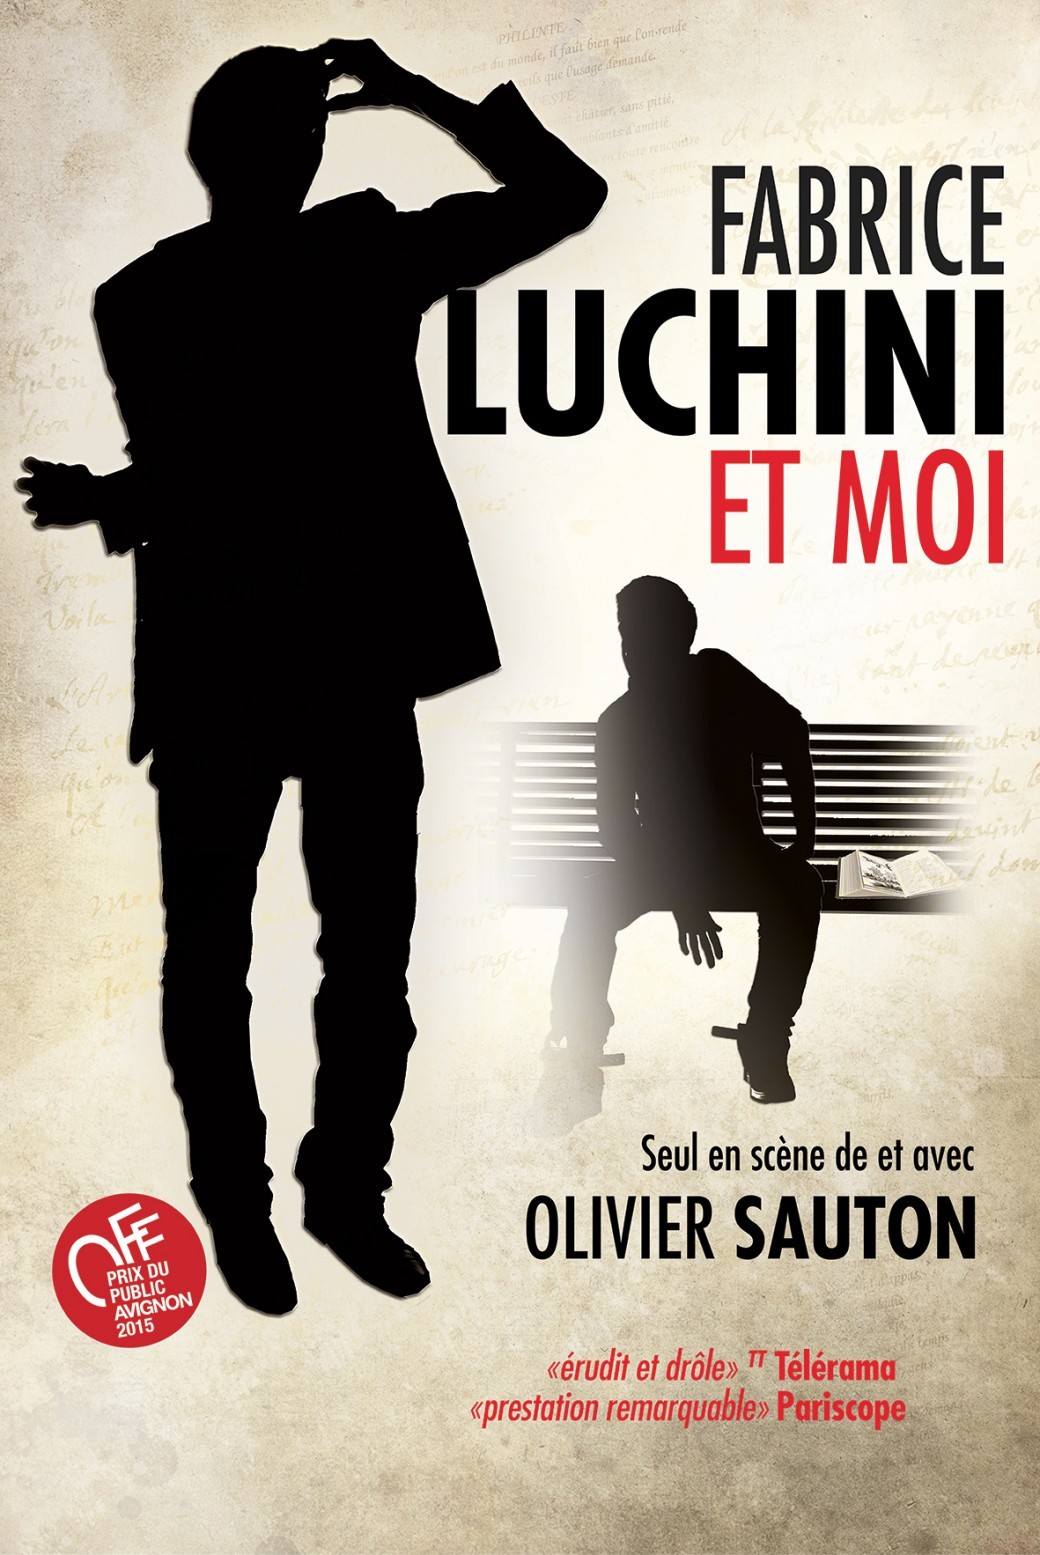 Olivier Sauton dans "Fabrice Luchini et moi"